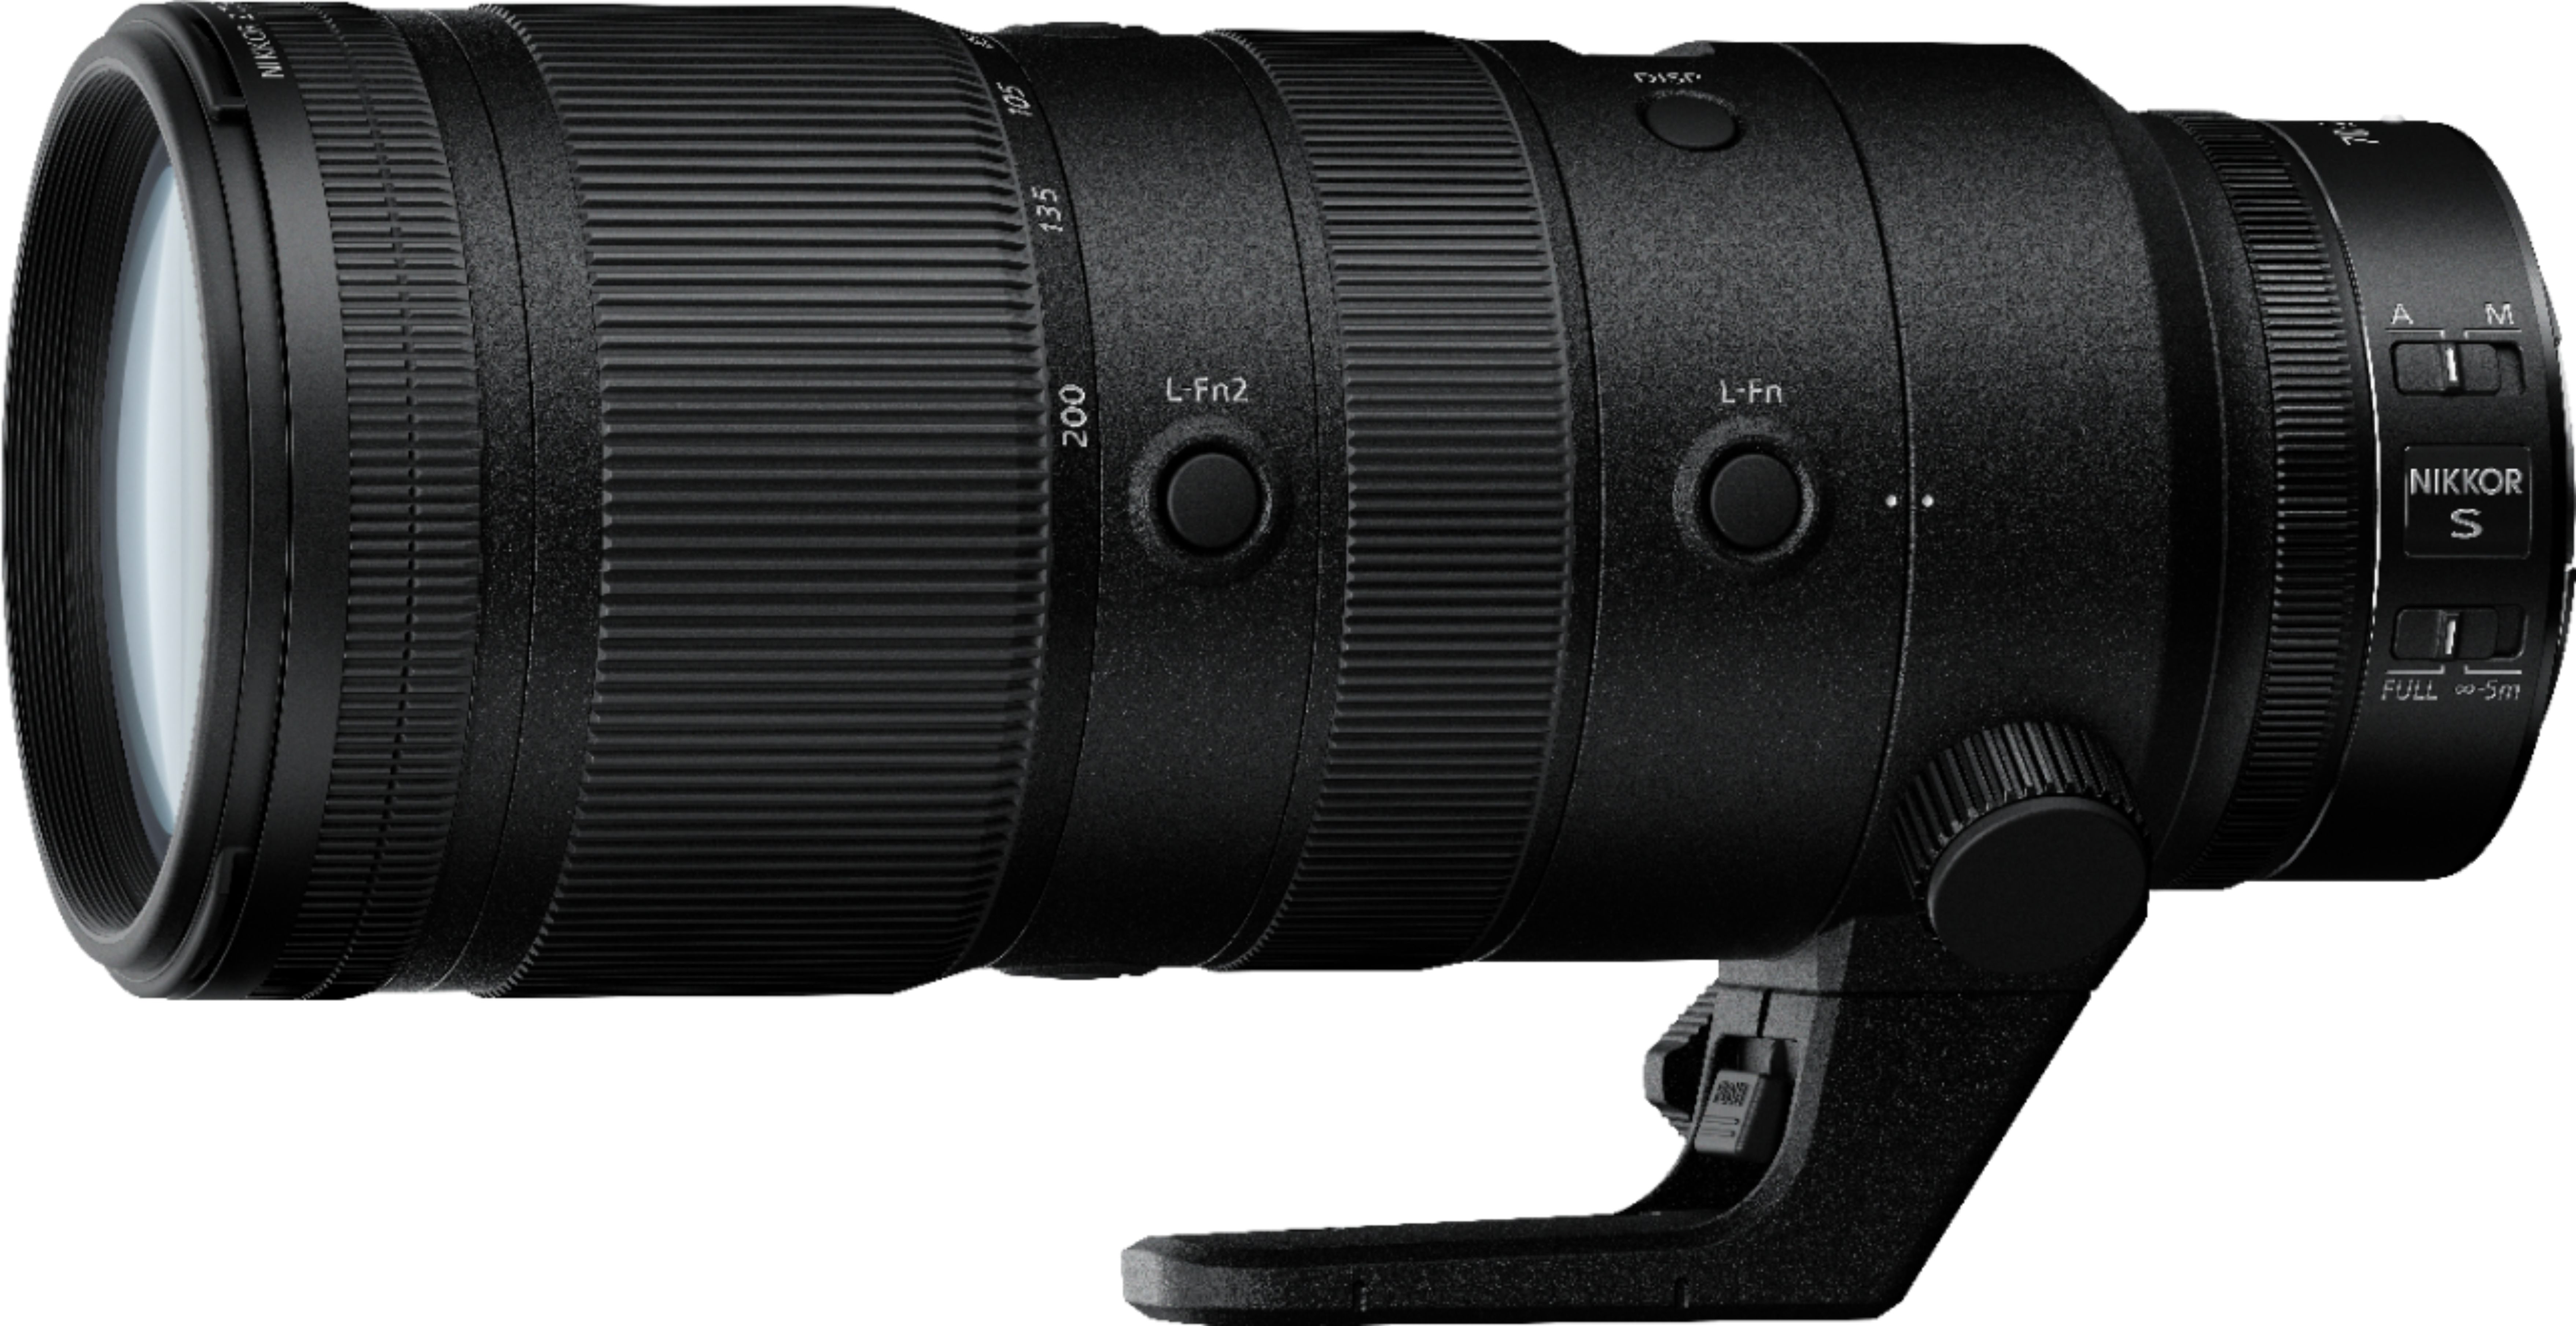 NIKKOR Z 70-200mm f/2.8 VR S Optical Telephoto Zoom Lens for Nikon Z  Cameras Black 20091 - Best Buy